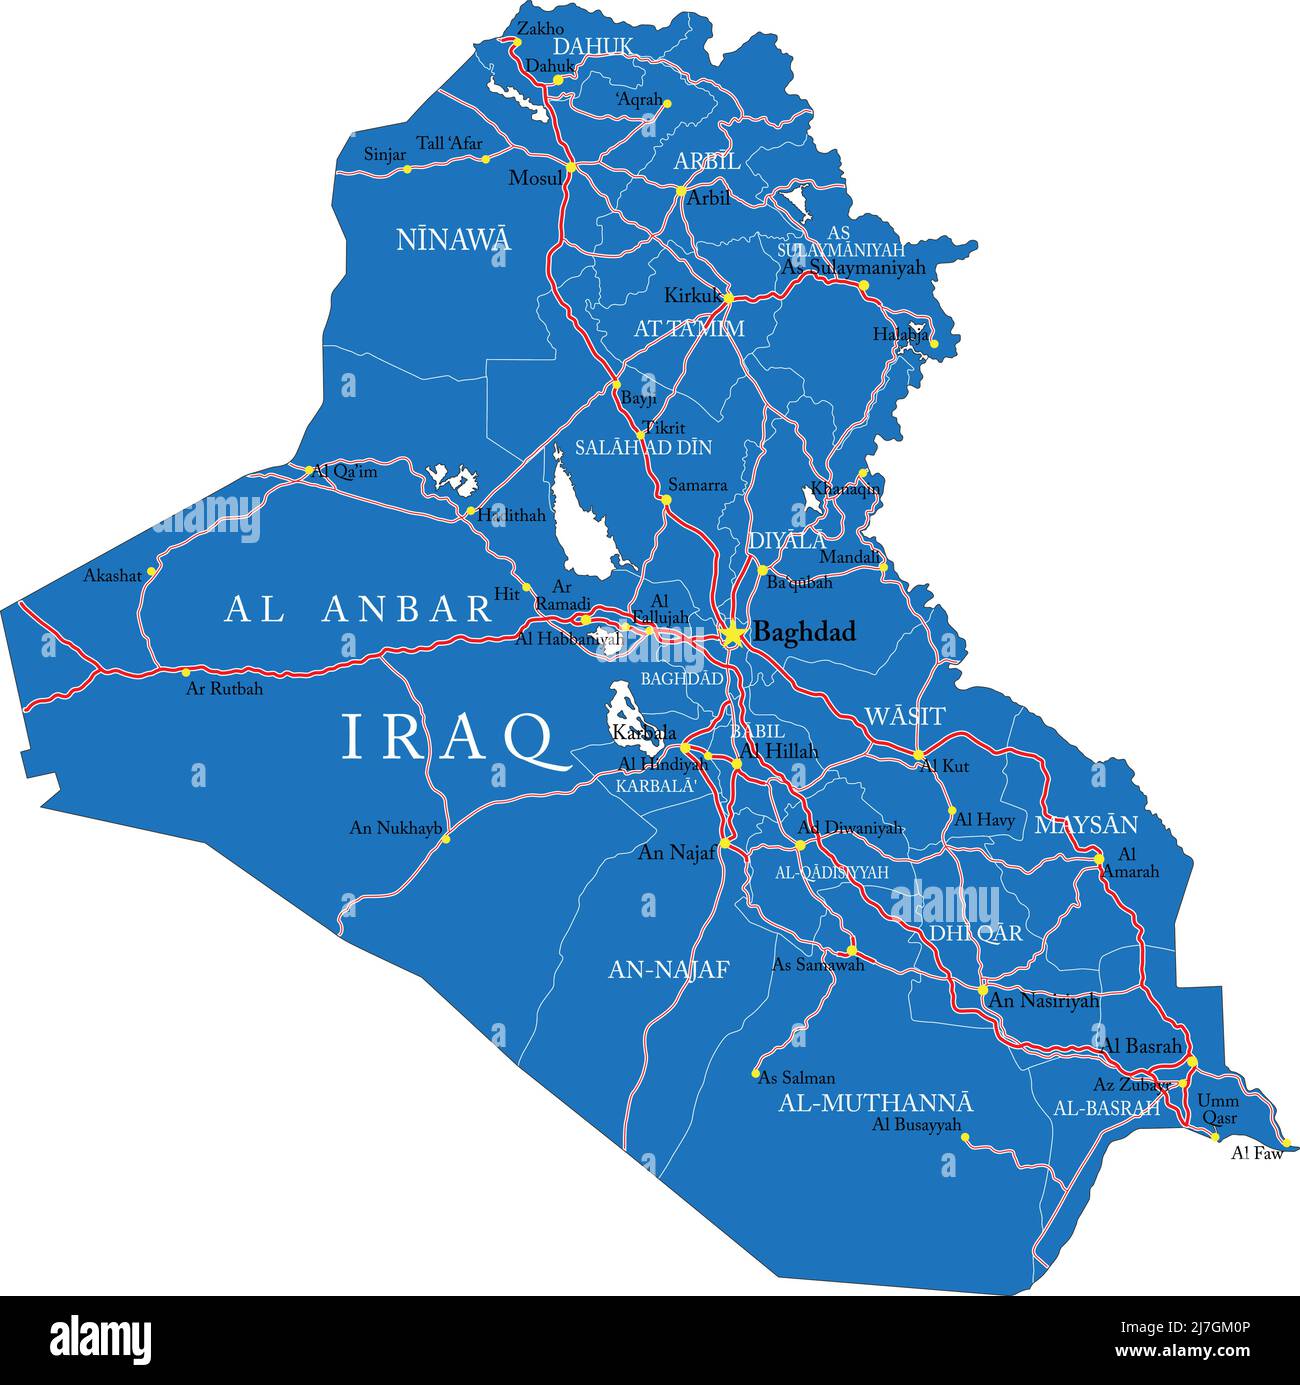 Hochdetaillierte Vektorkarte des Irak mit Verwaltungsregionen, Hauptstädten und Straßen. Stock Vektor